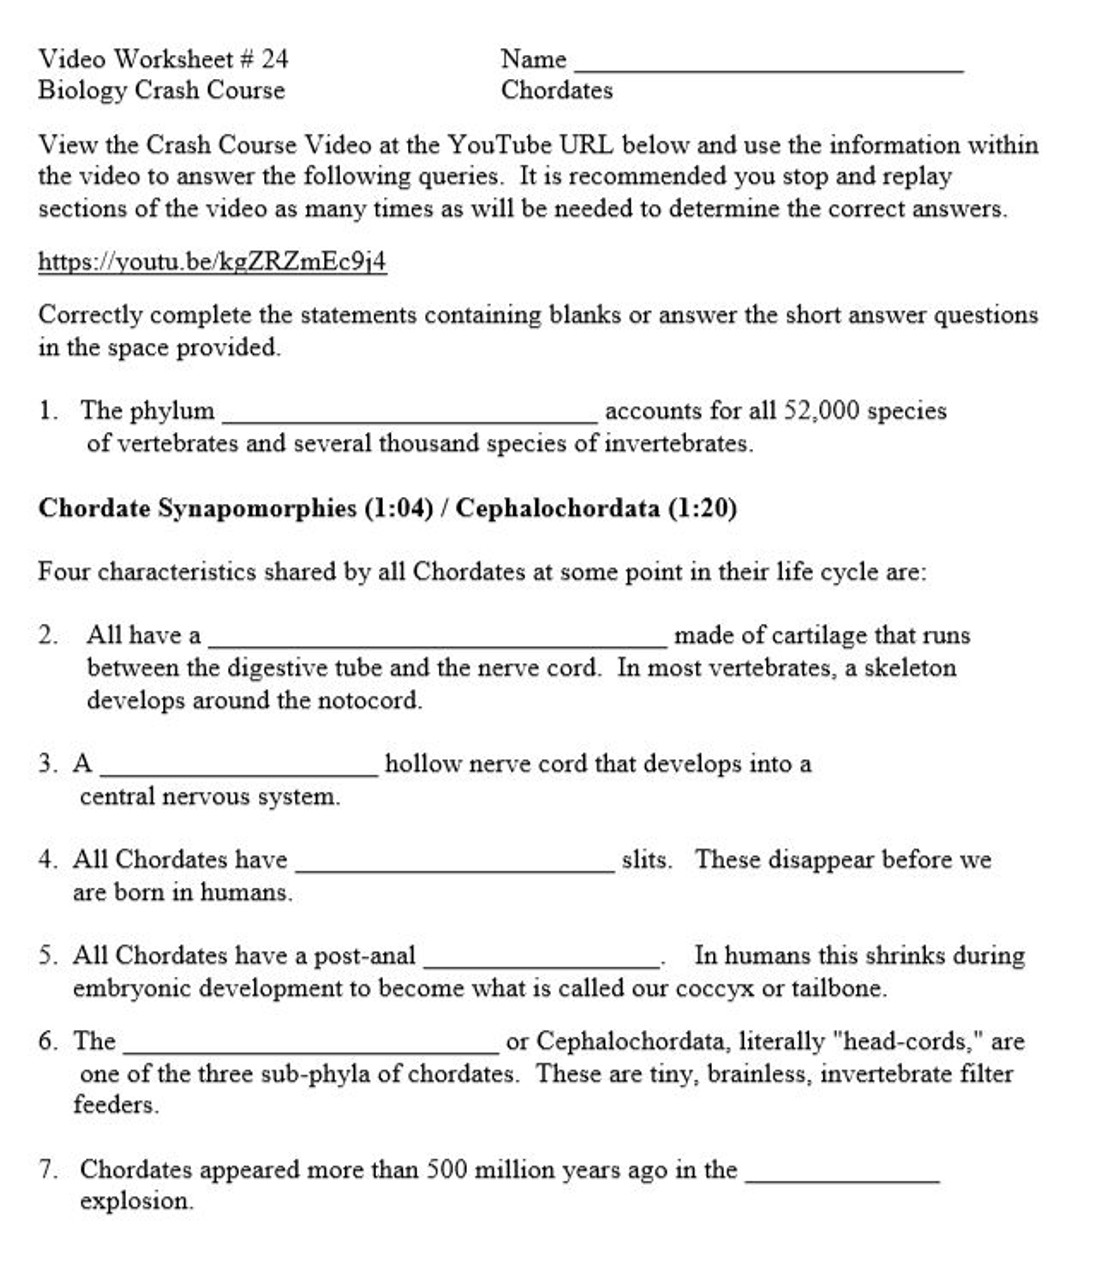 Crash Course Biology Video Worksheet 24: Chordates